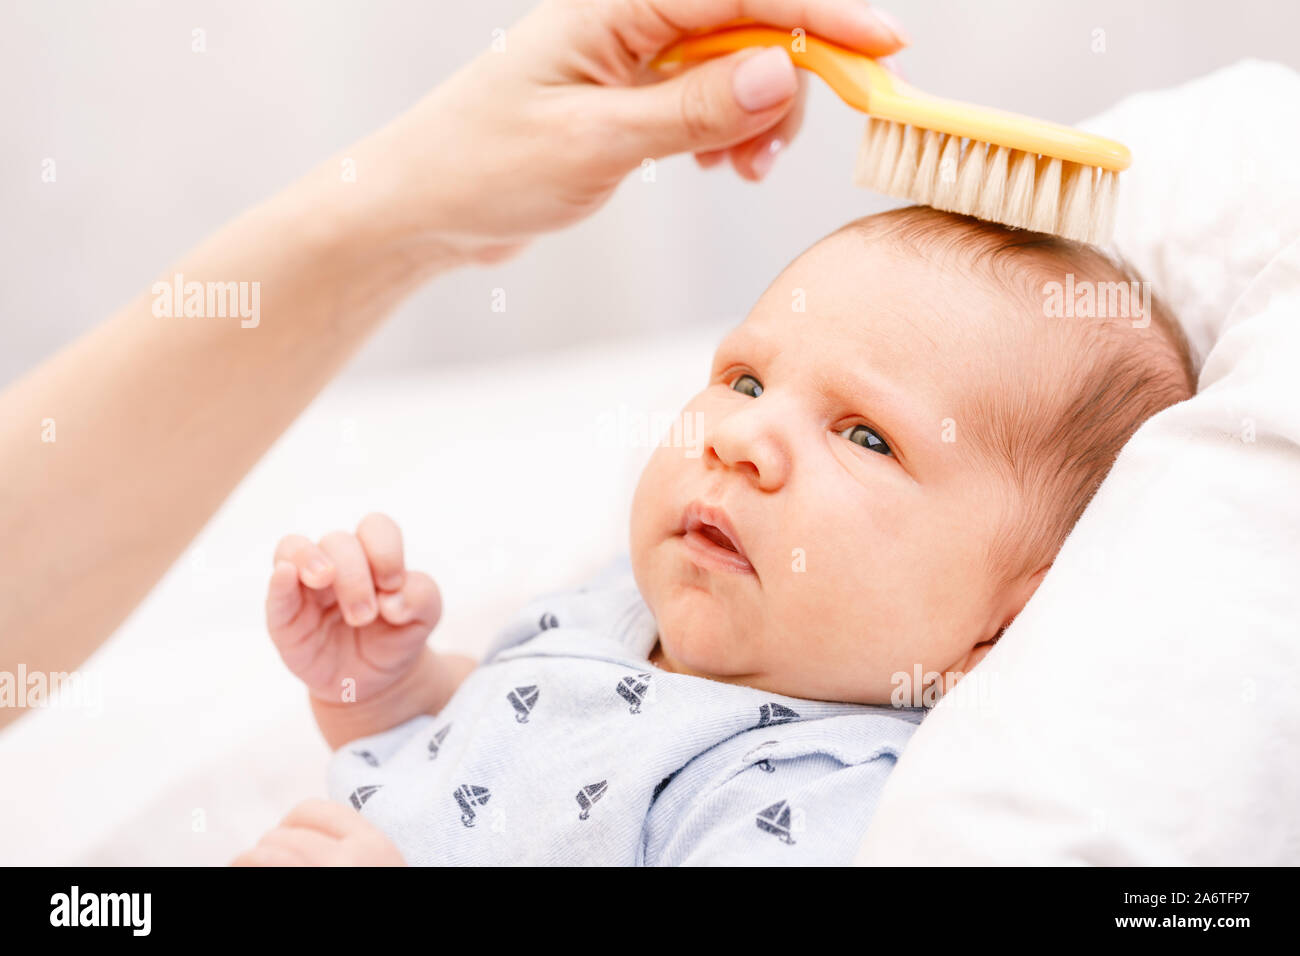 Как подстричь новорожденного. Волосы у малышей до года. Стрижка новорожденного ребенка. Новорожденным подстригают волосы?. Расчесывают волосы новорожденному.